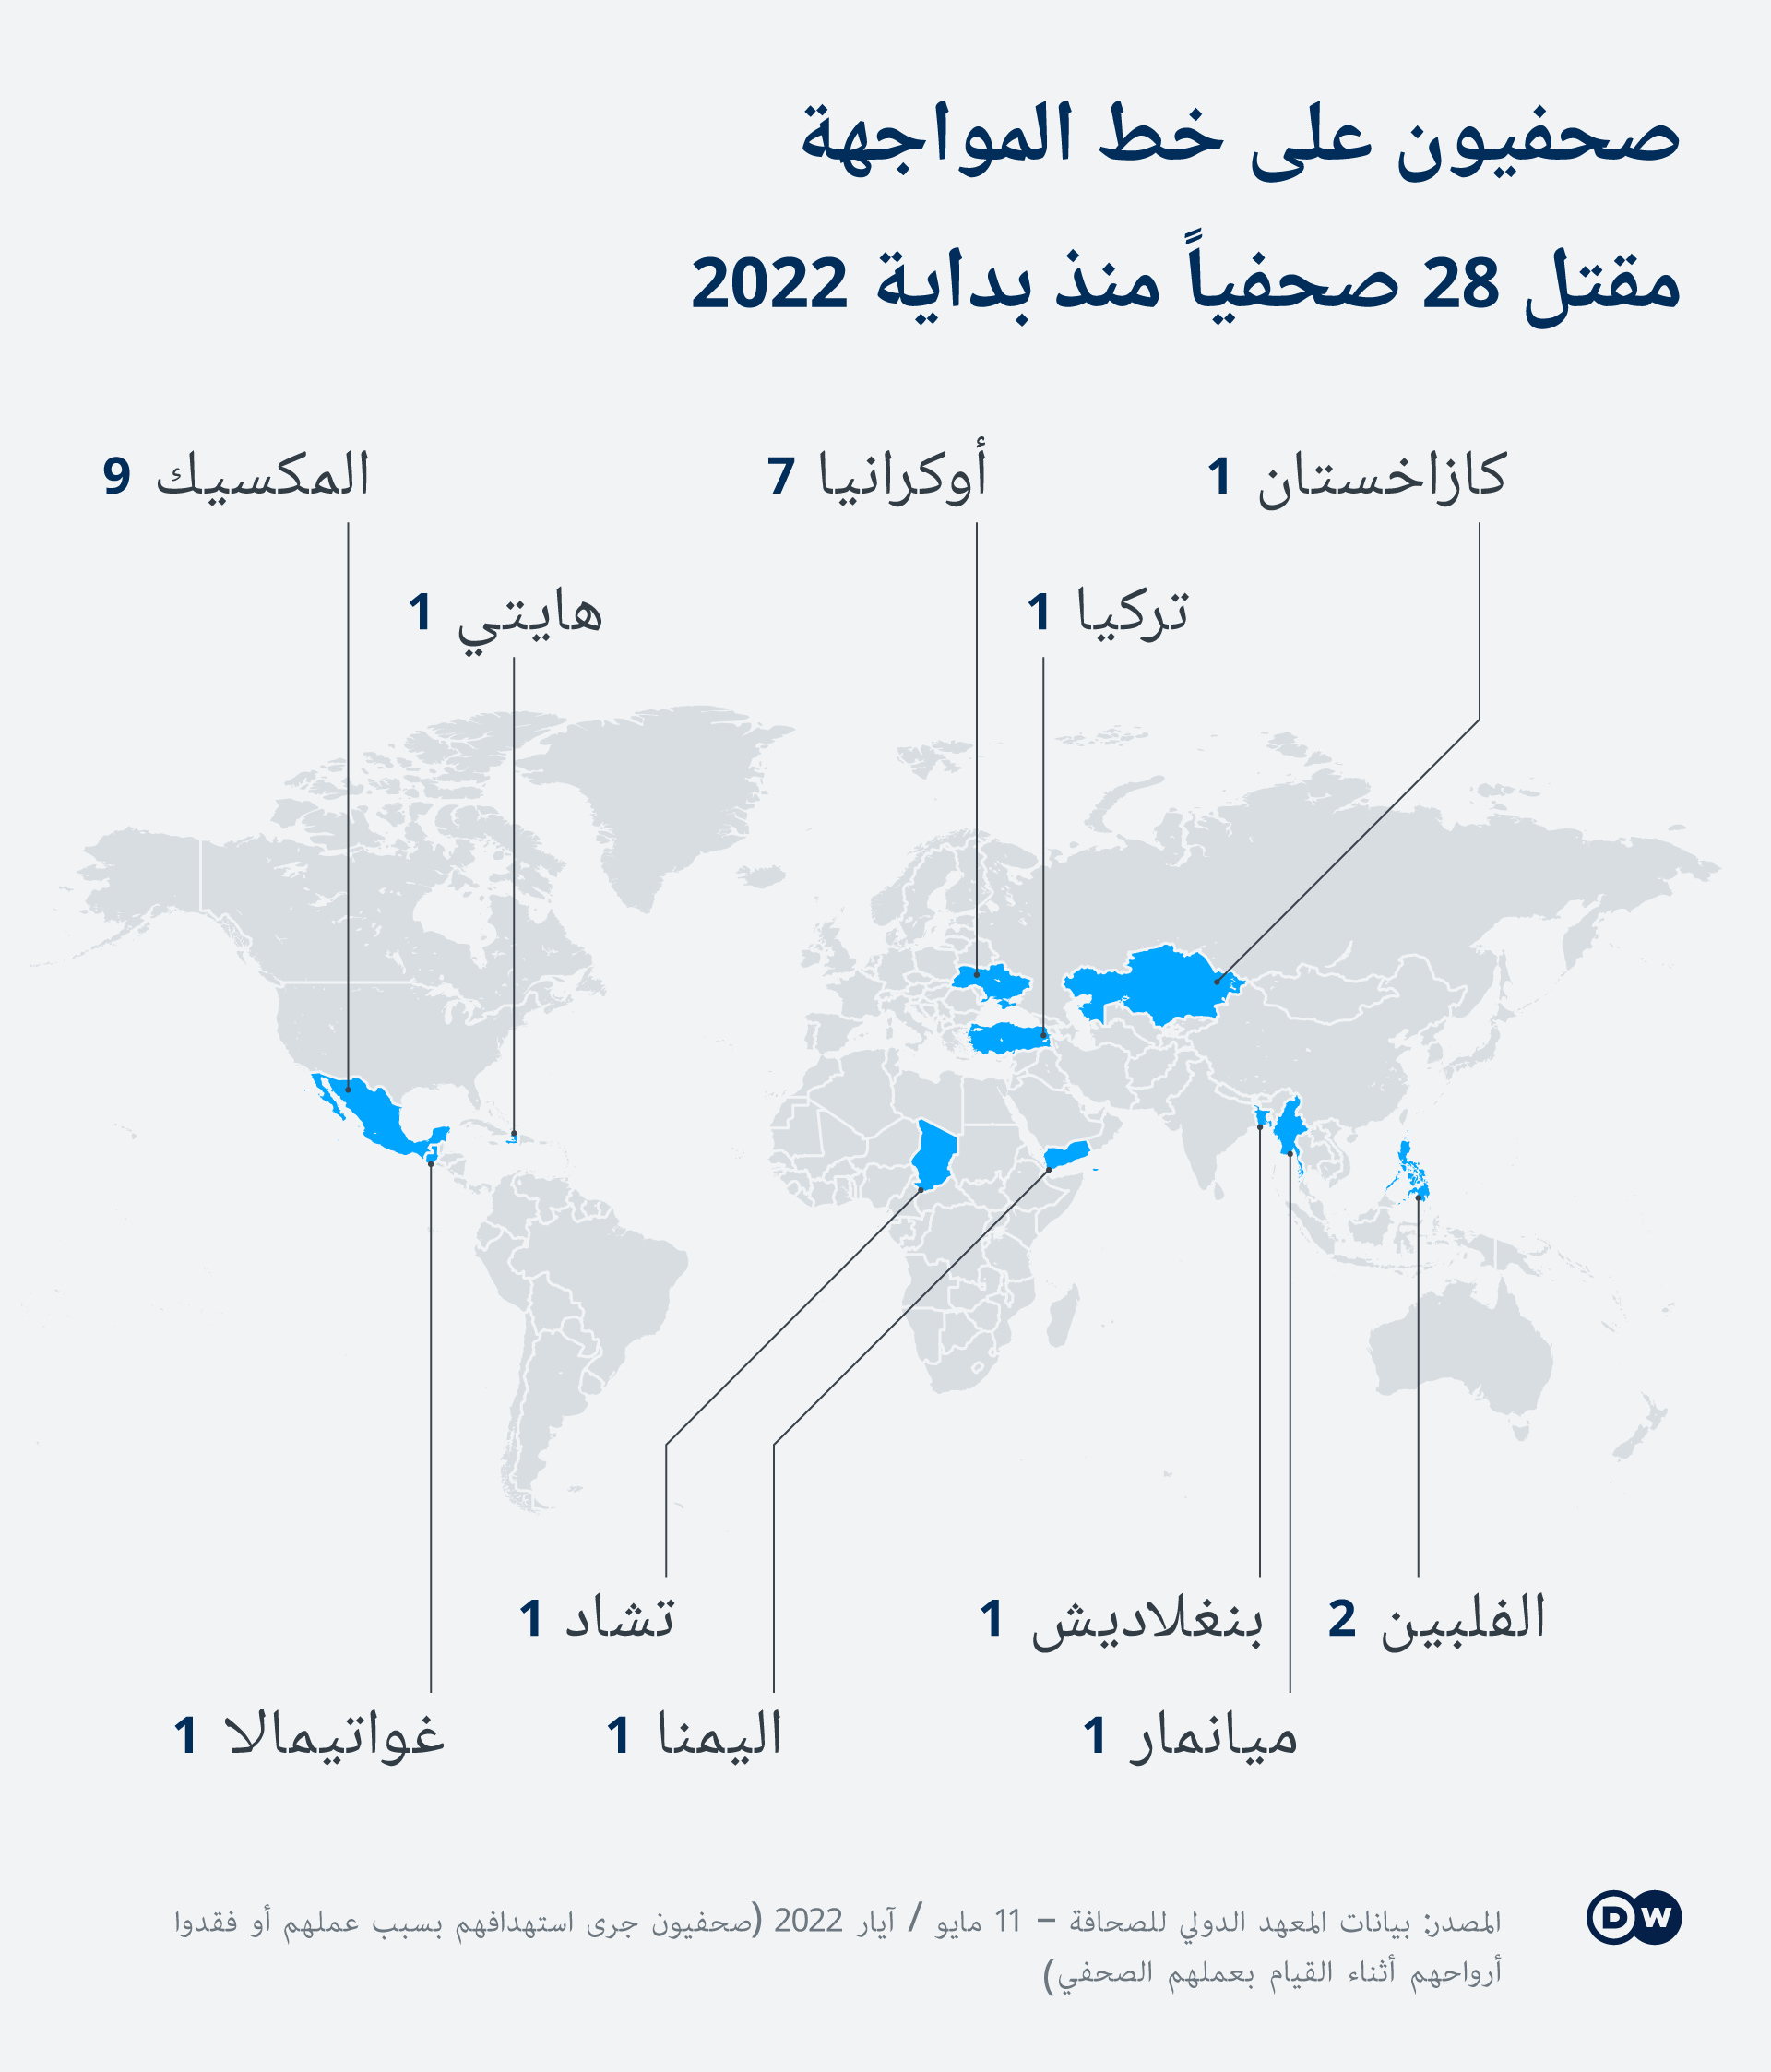 الصحفيين القتلى في جميع أنحاء العالم  حتى 11  مايو عام 2022. ermordete Journalisten weltweit 2022 Infografik DW